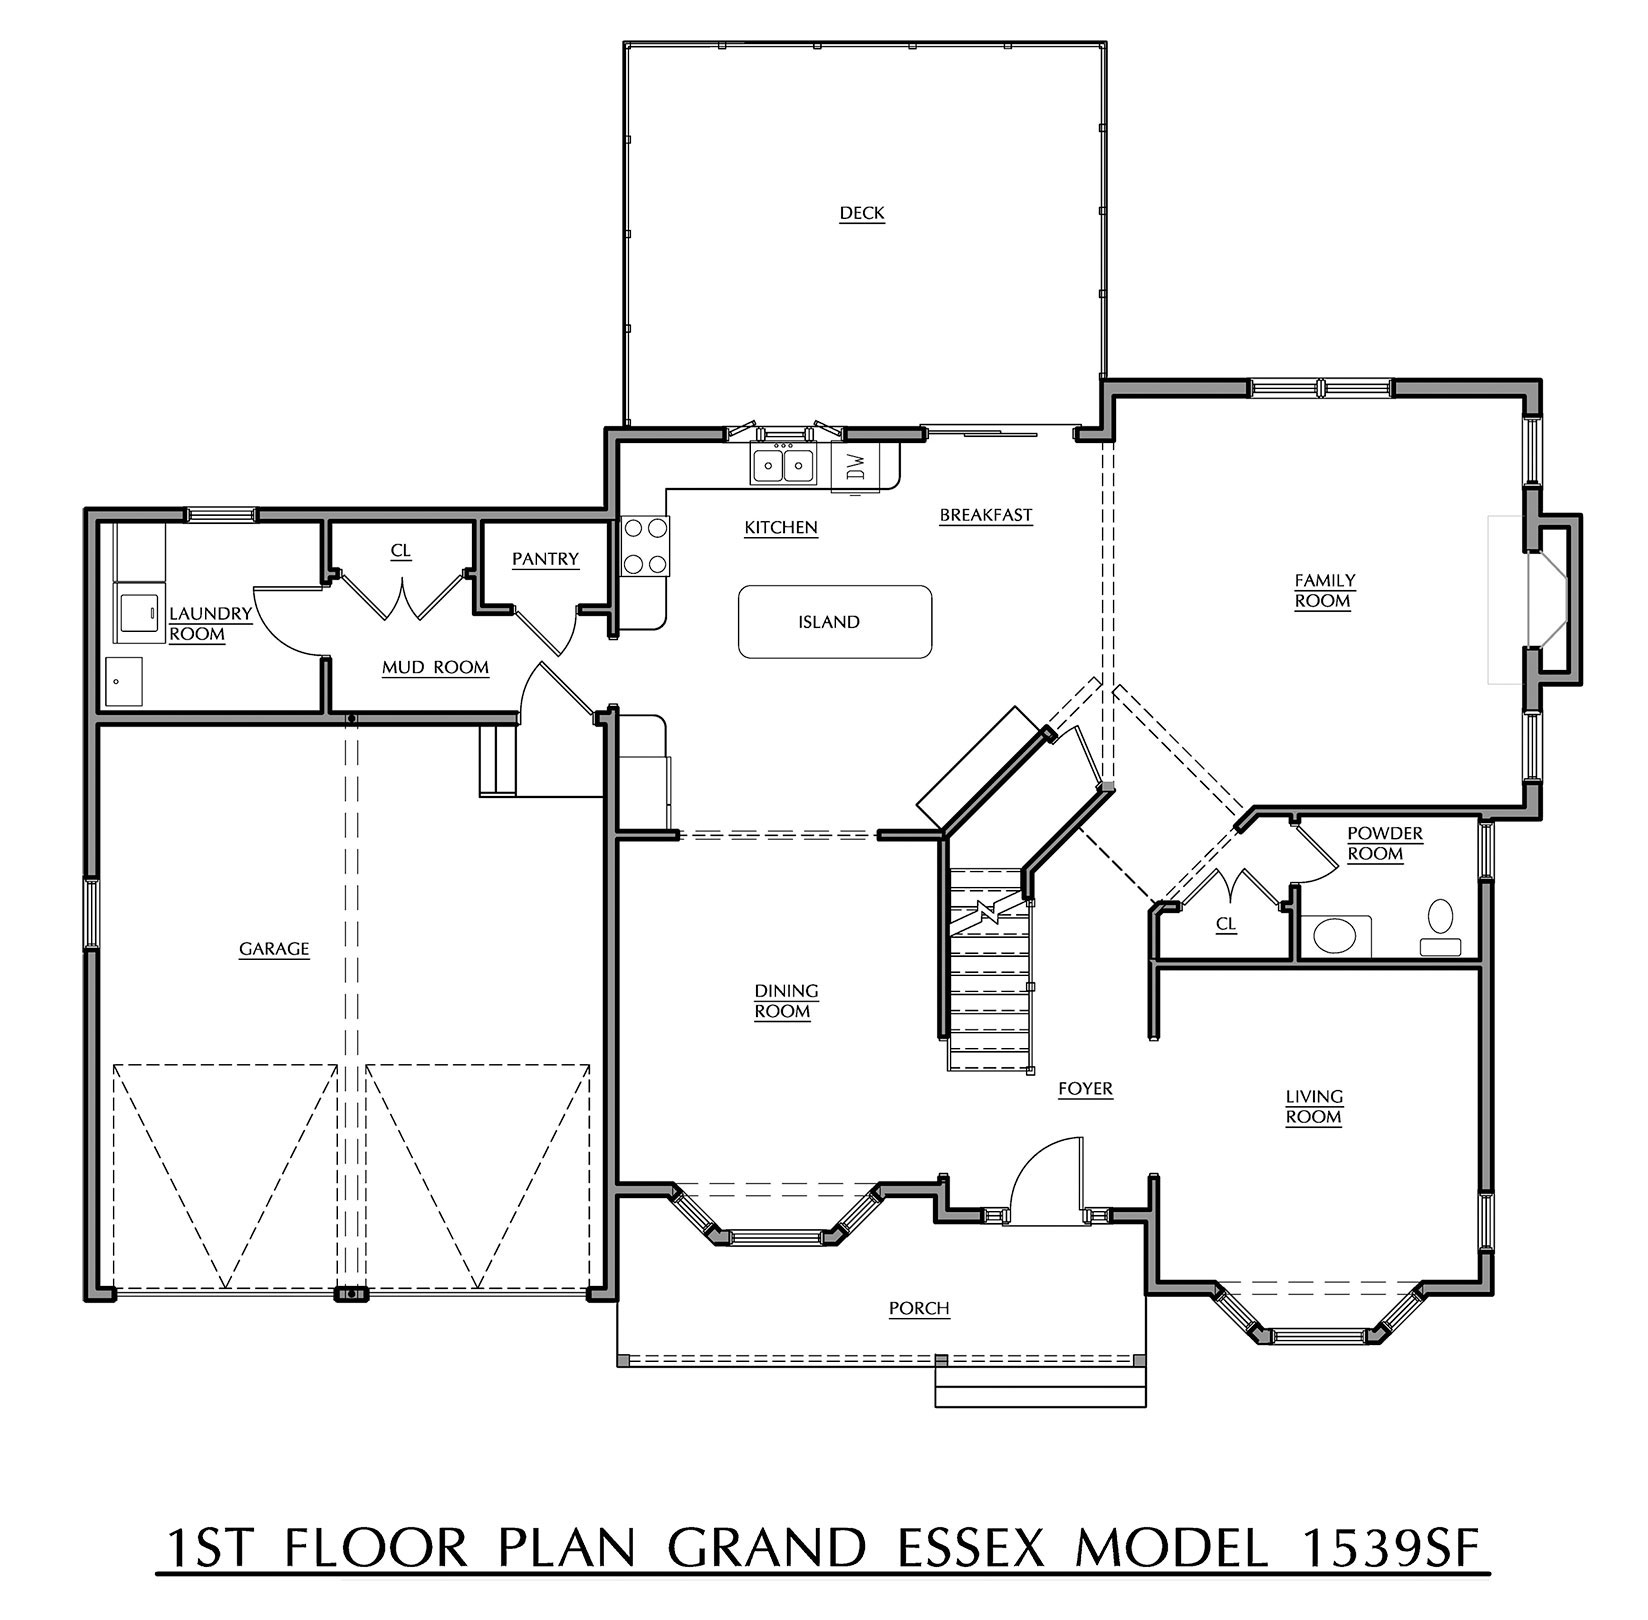 Grand Essex - First Floor Plan